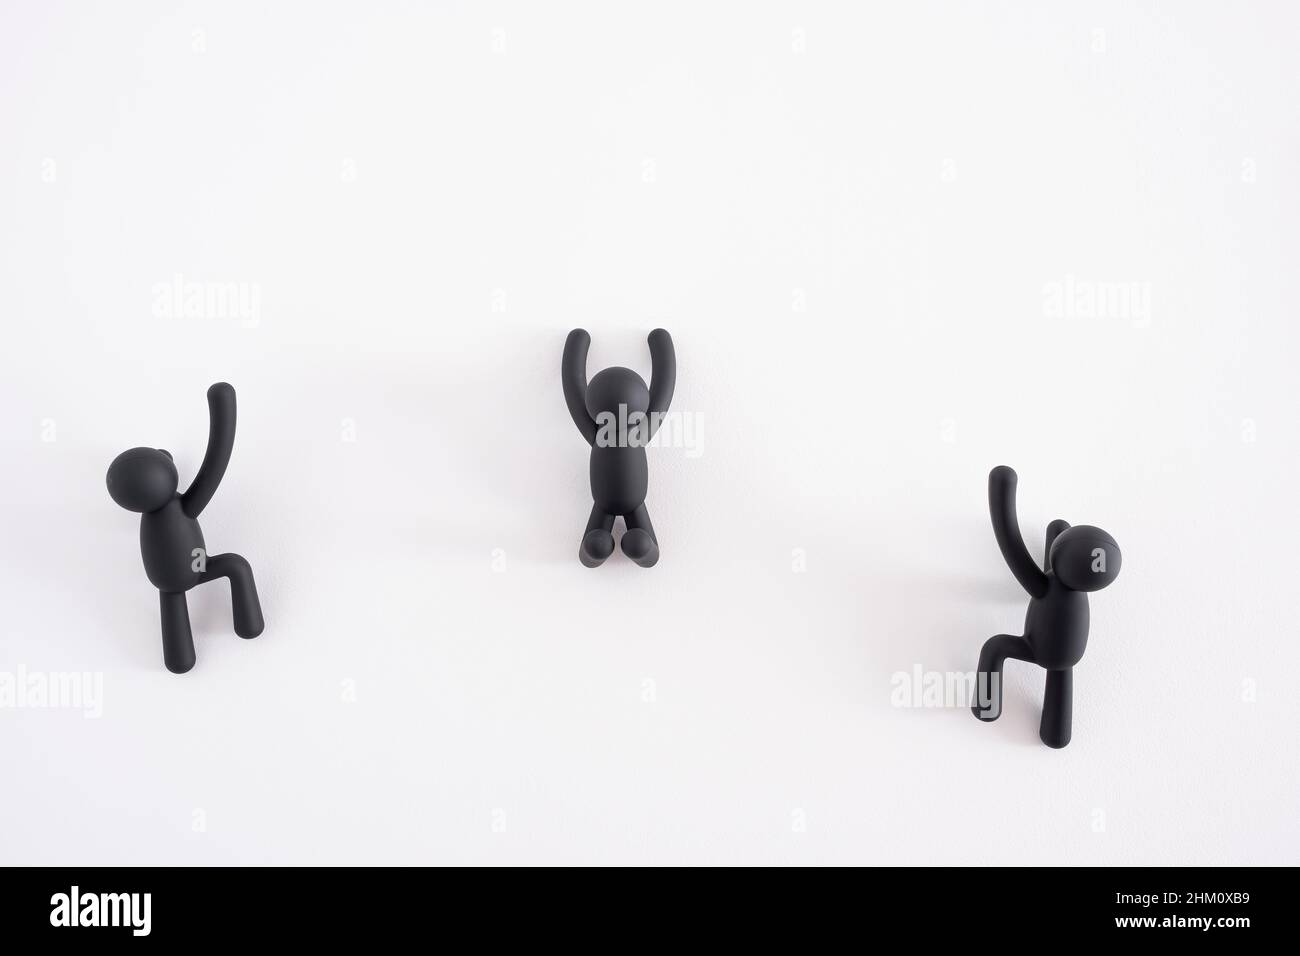 Drei schwarze 3D Marionetten, die über einen weißen Hintergrund klettern, 3D Menschen, menschlicher Charakter, Person, die an einer weißen Wand hängt, Konzept der Selbstverbesserung Stockfoto